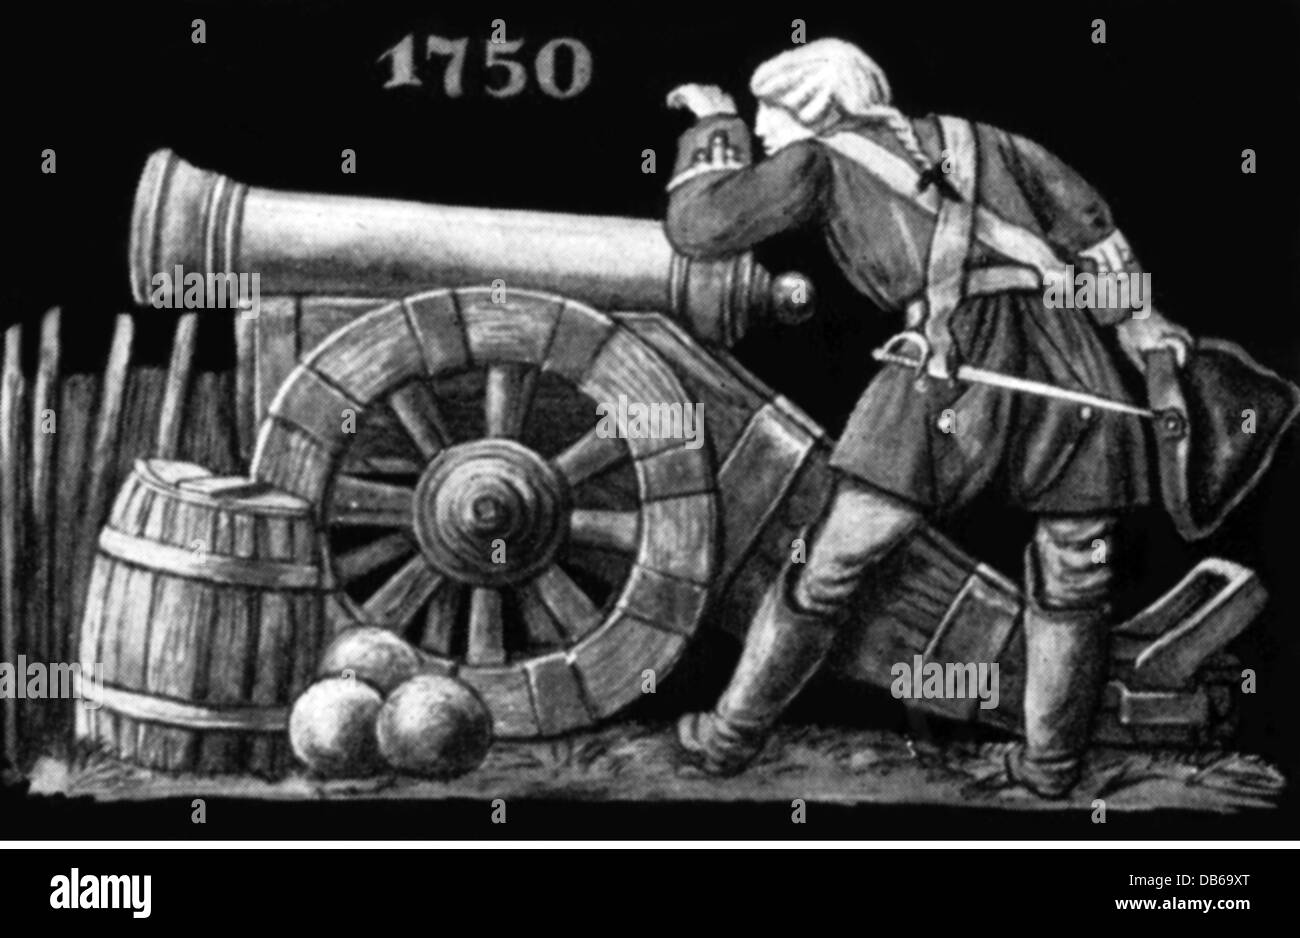 Militaire, artillerie, arme à feu et artileryman, 1750, illustration après une frise "le développement du canon", droits additionnels-Clearences-non disponible Banque D'Images